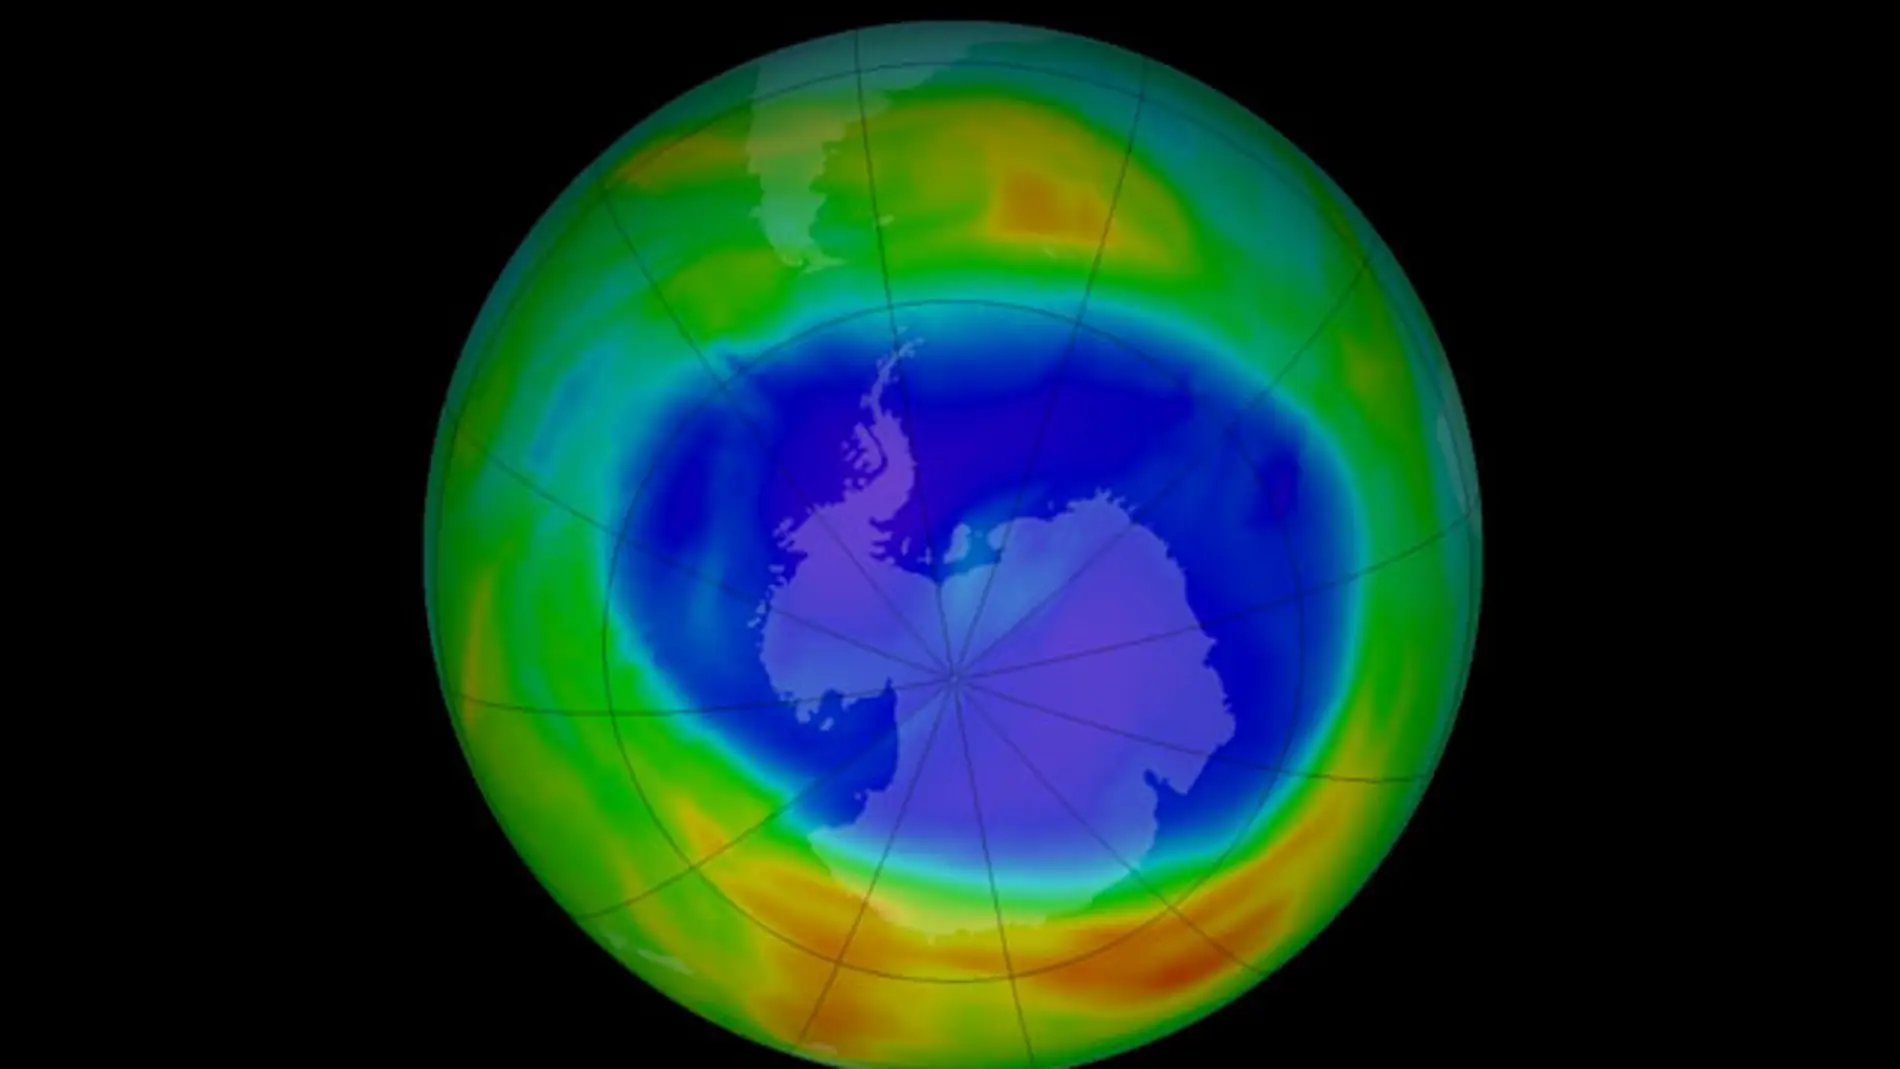 Ozone depletion. Озоновый слой. Озоновые дыры. Дыры в озоновом слое. Разрушение озонового слоя земли.